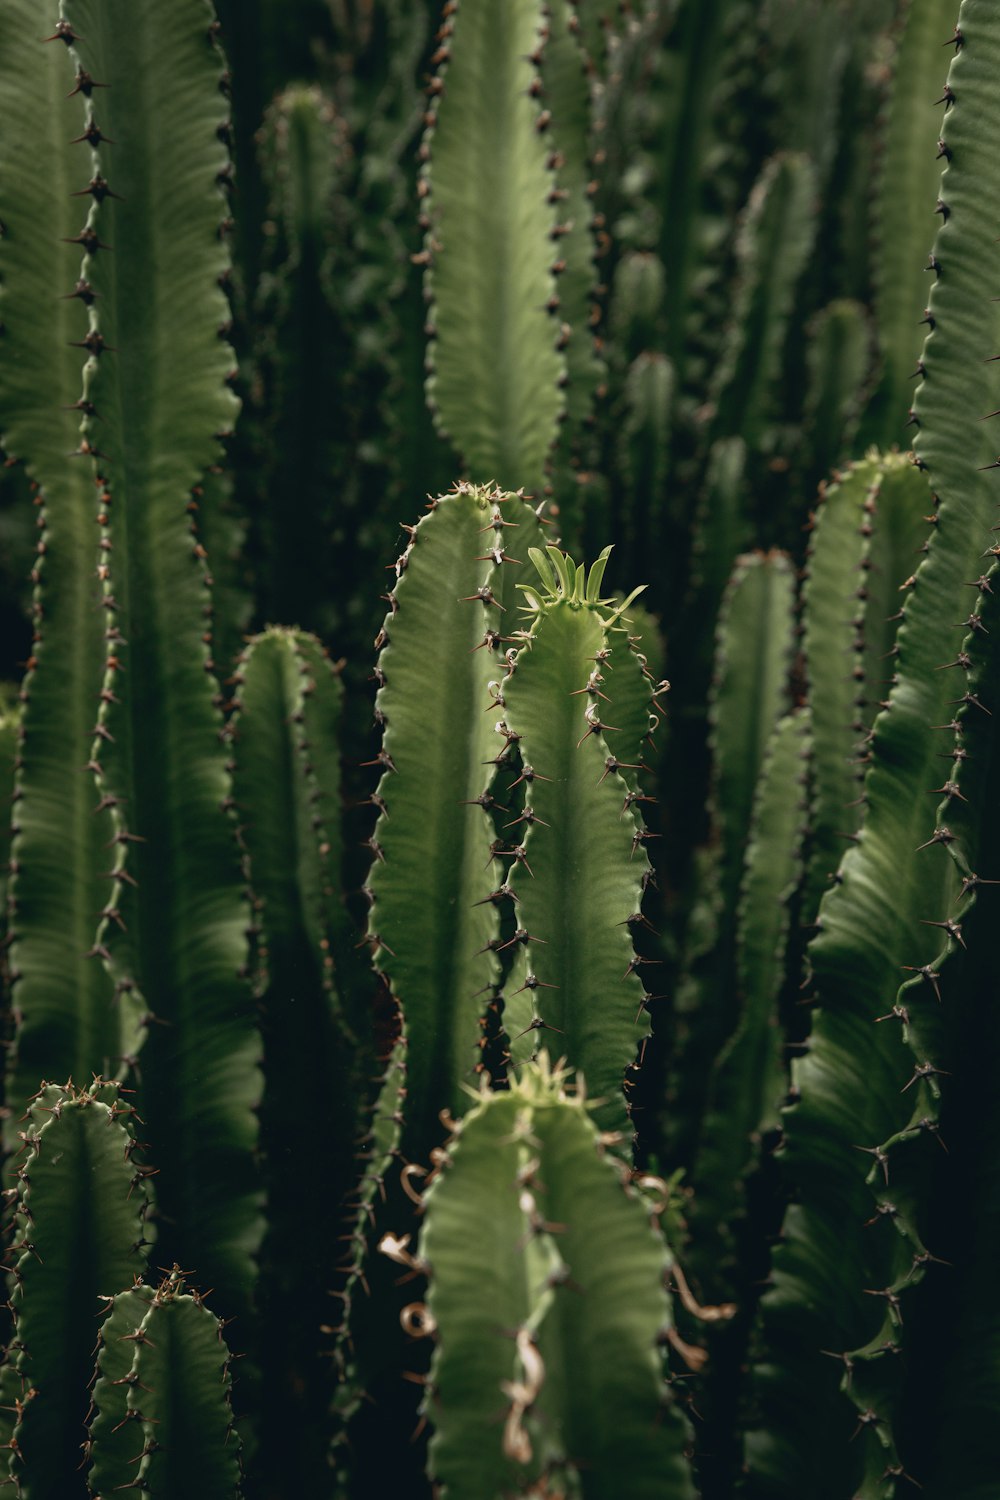 green cactus plants